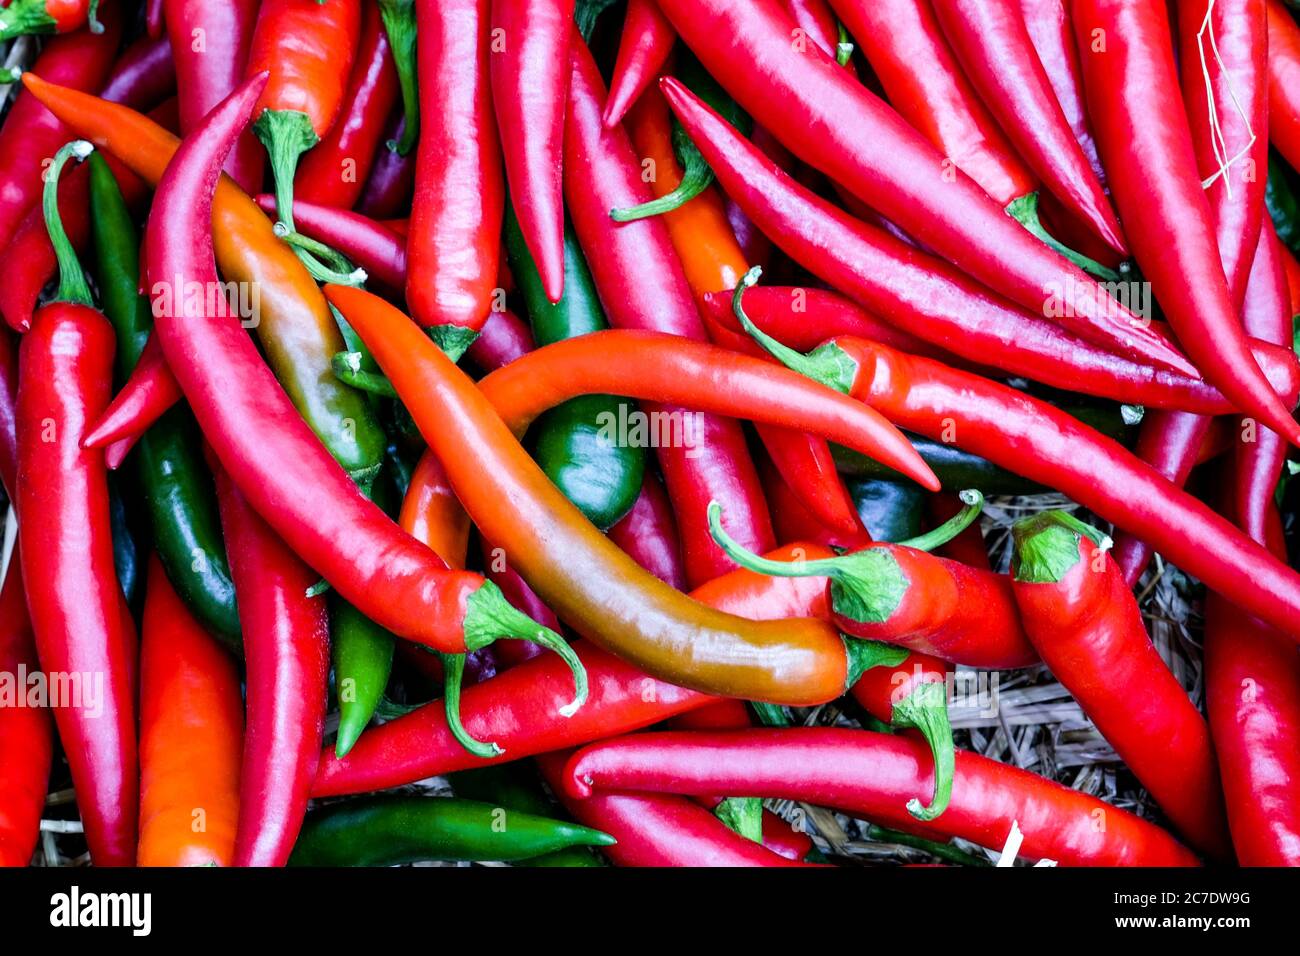 Groupe de piment rouge frais sur la vue de dessus, légumes pour la cuisine qui donnent un goût épicé, fond de texture de piment rouge Banque D'Images